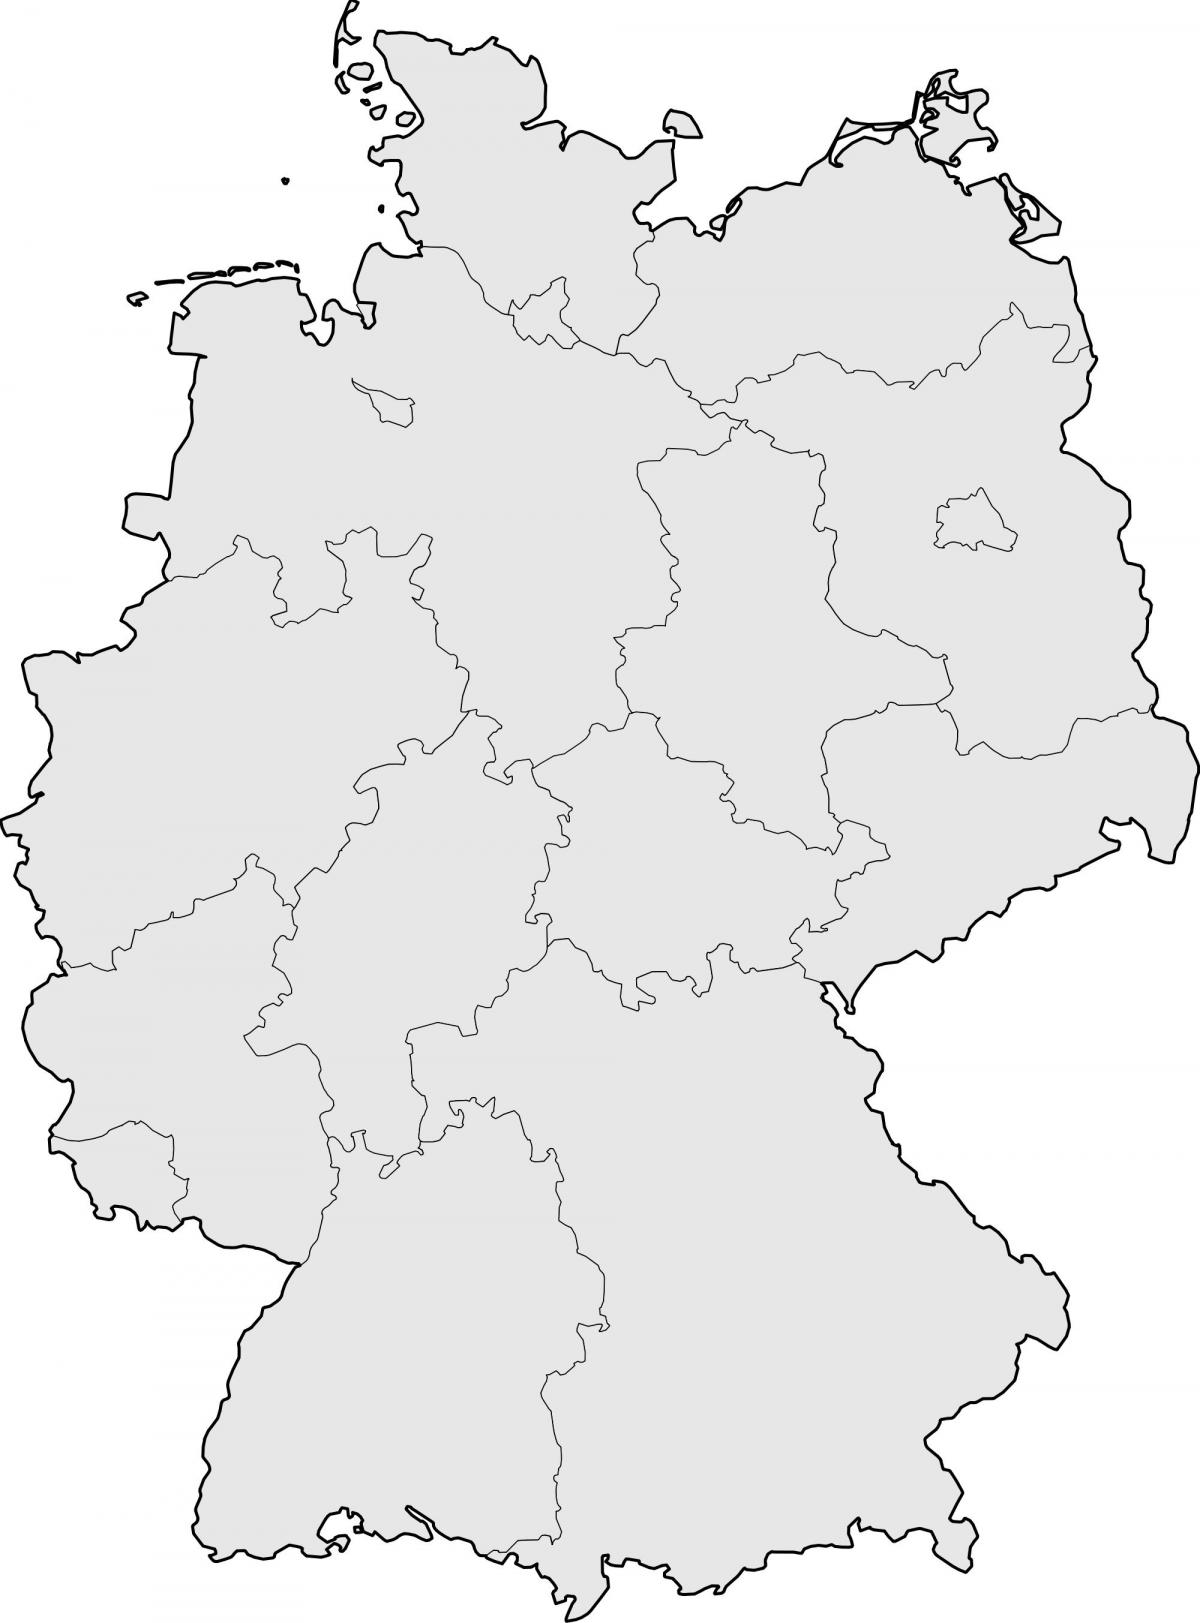 Lege kaart van Duitsland